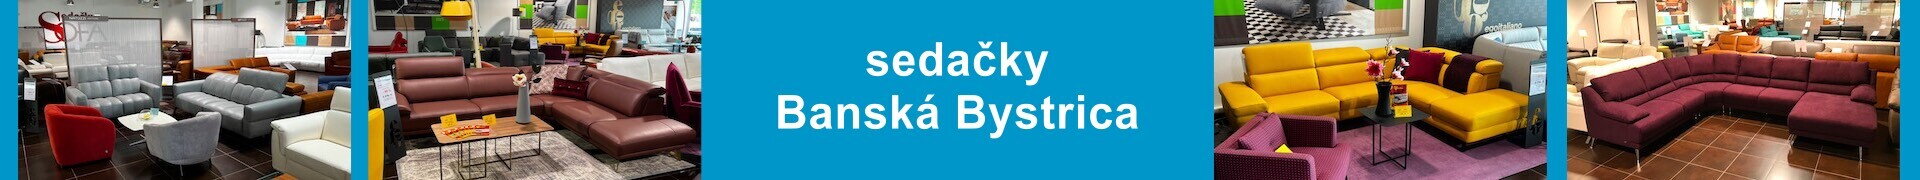 kožené_sedačky_Banská Bystrica_anais